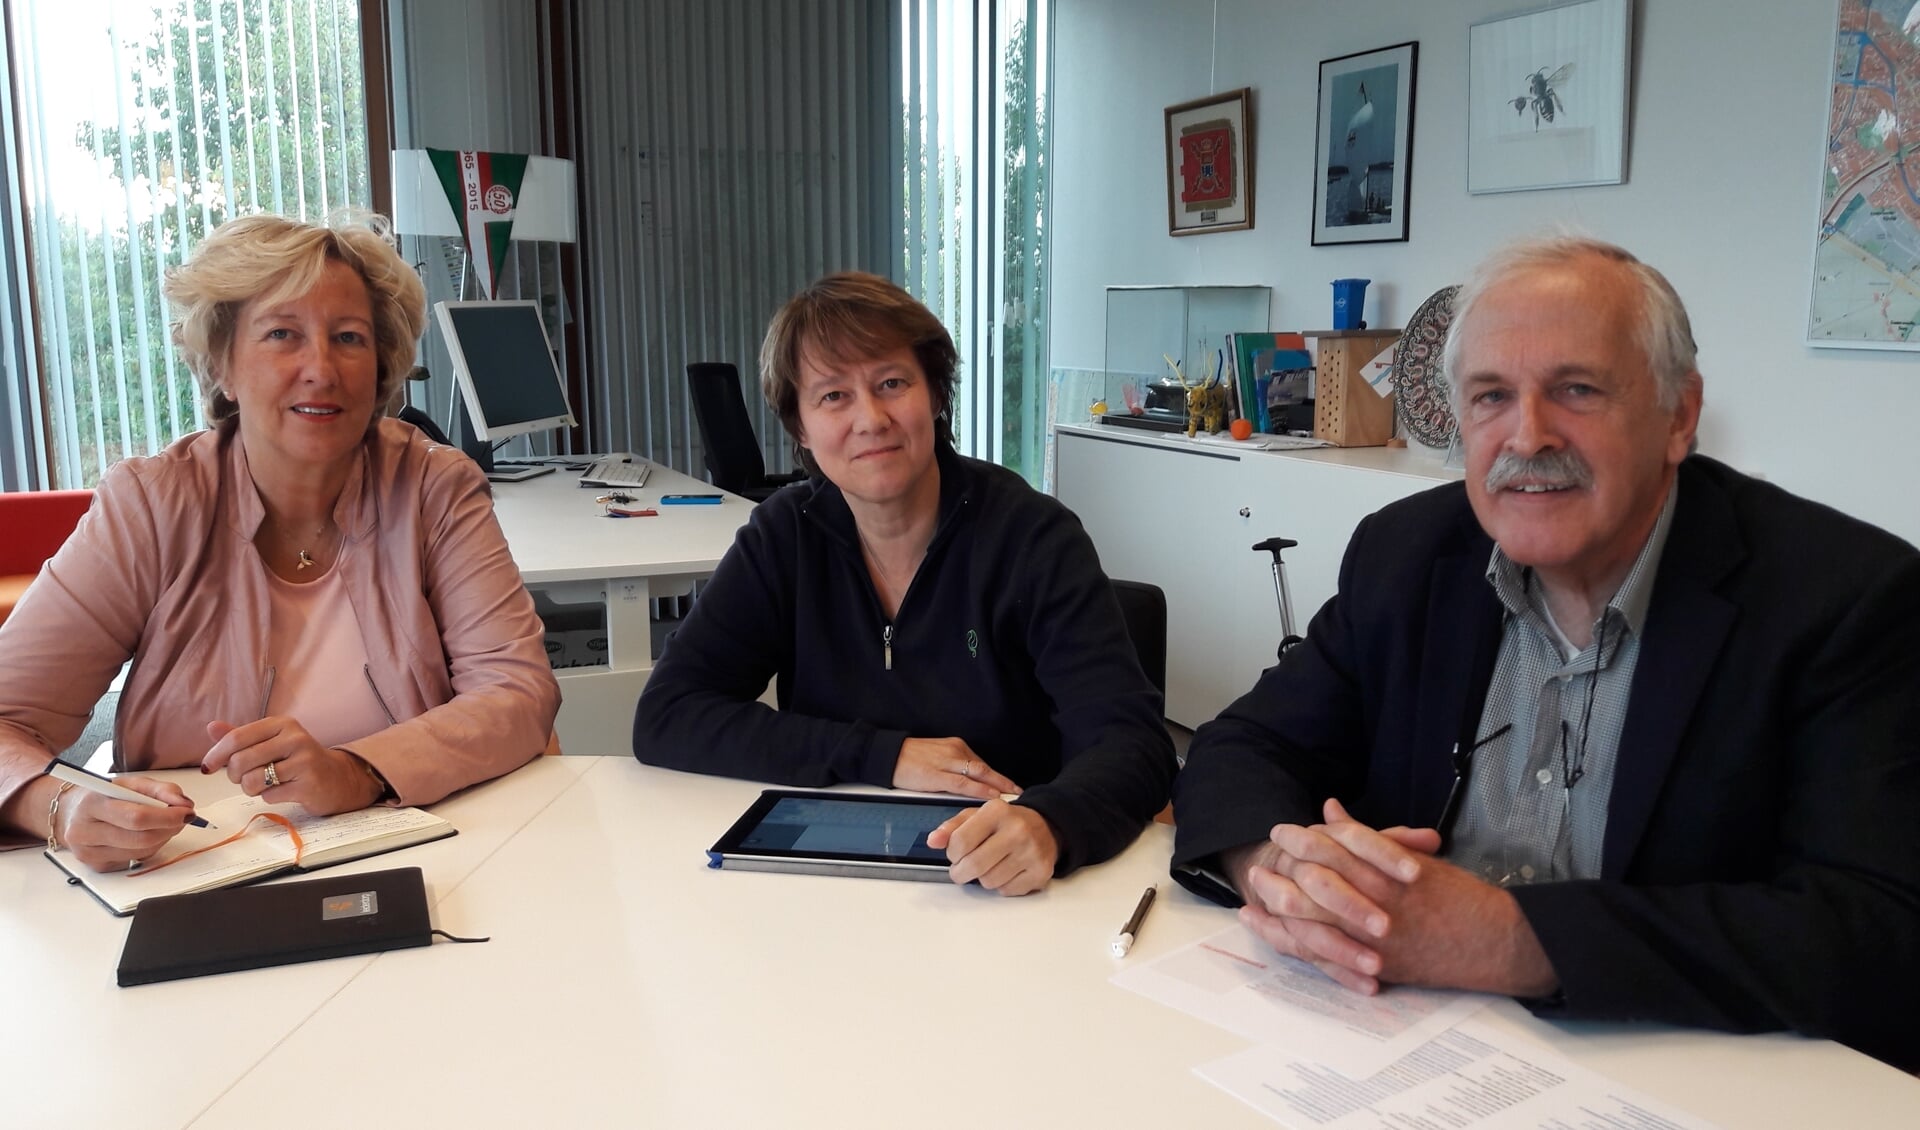 Opsteller Tanneke Schoonheim (midden) en voorzitter Emil Broesterhuizen van de Volksuniversiteit Leiderdorp nemen het dictee door met burgemeester Laila Driessen.